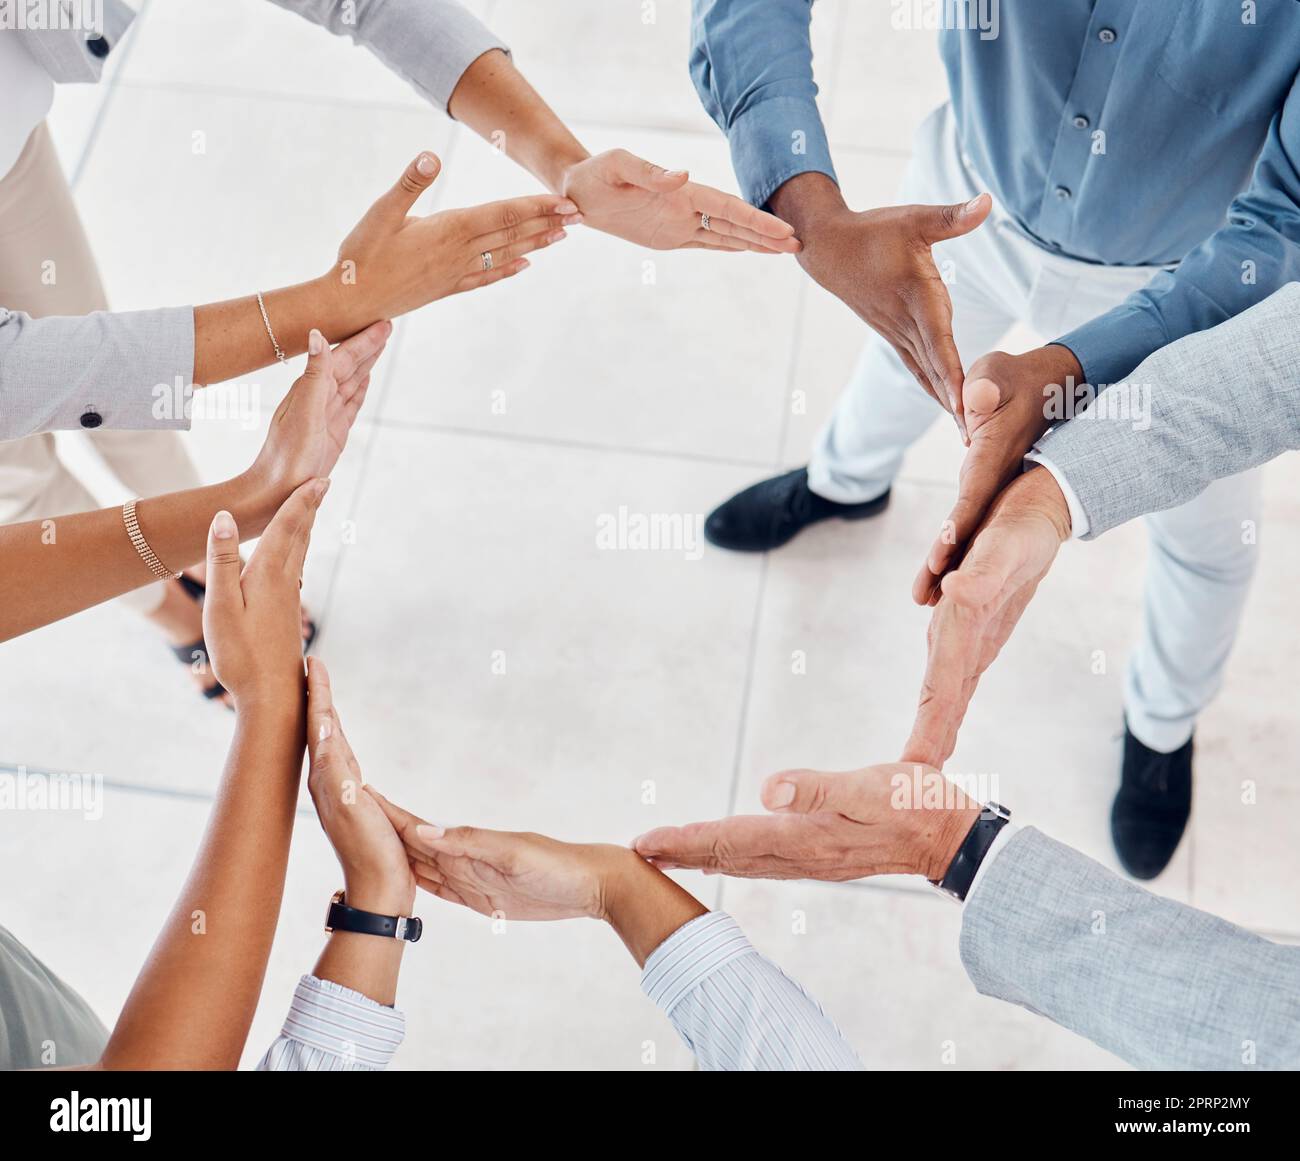 Teamarbeit, Hände und Kreis in Solidarität der Geschäftsleute in Einheit, Zusammenarbeit und Vertrauen bei der Arbeit. Die Vielfalt einer Gruppe von Mitarbeitern, die für Vereinbarung, Hilfe und Team für Gemeinschaft zusammenstehen Stockfoto